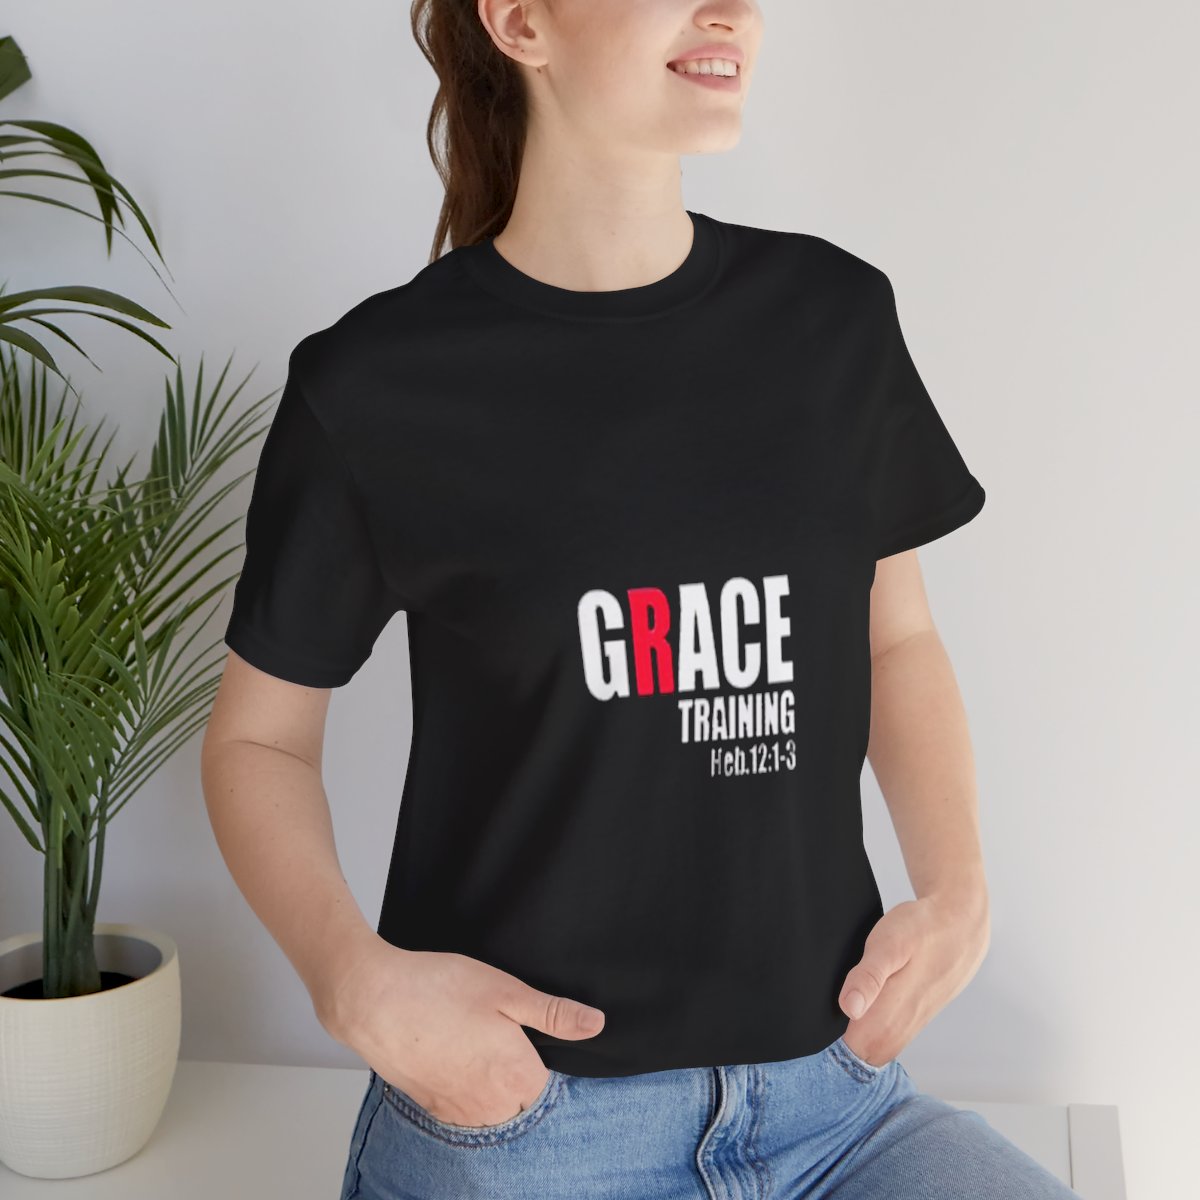 Grace Training T-Shirt product thumbnail image